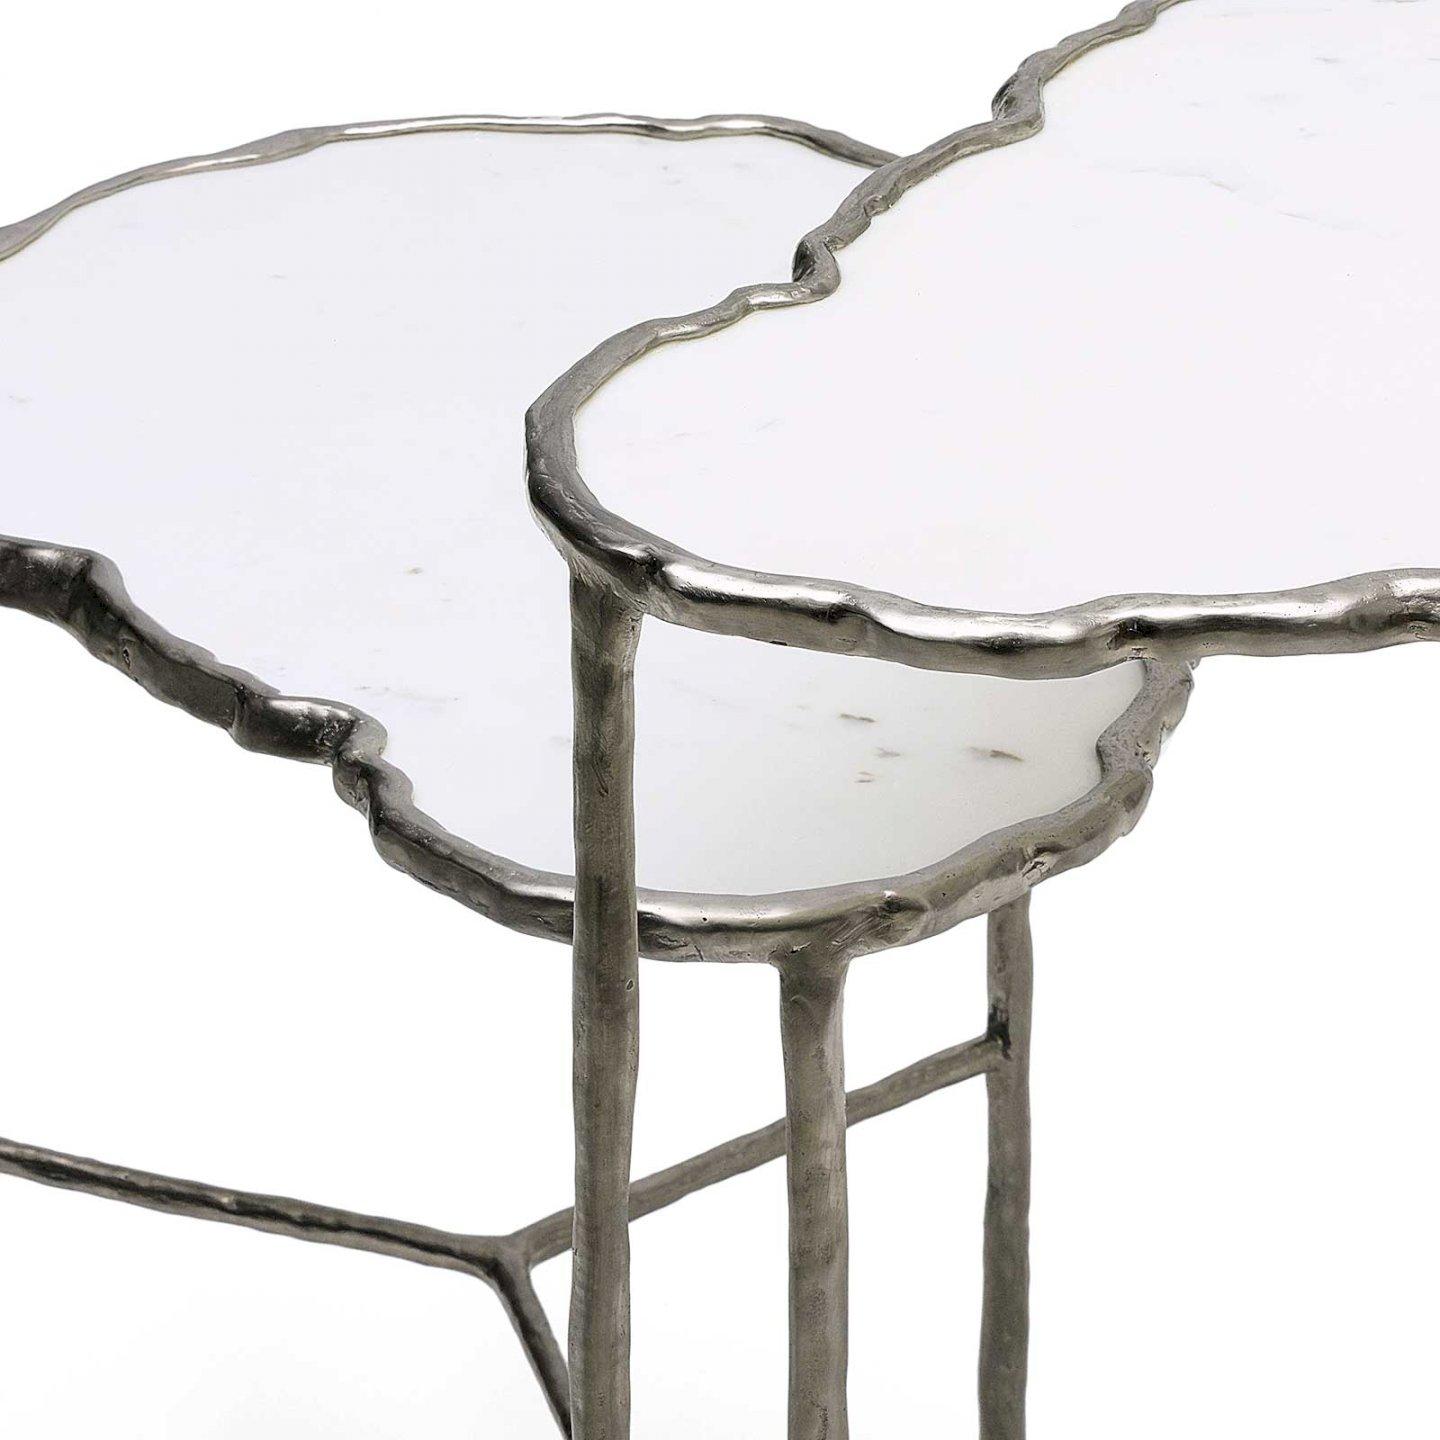 La table d'appoint Nuage, dont le plateau est en marbre et la structure en bronze nickelé, est née de la collaboration entre Sophie Lafont et Liaigre. Ces courbes douces contrastent avec la ligne de la maison.

Table d'appoint en marbre de